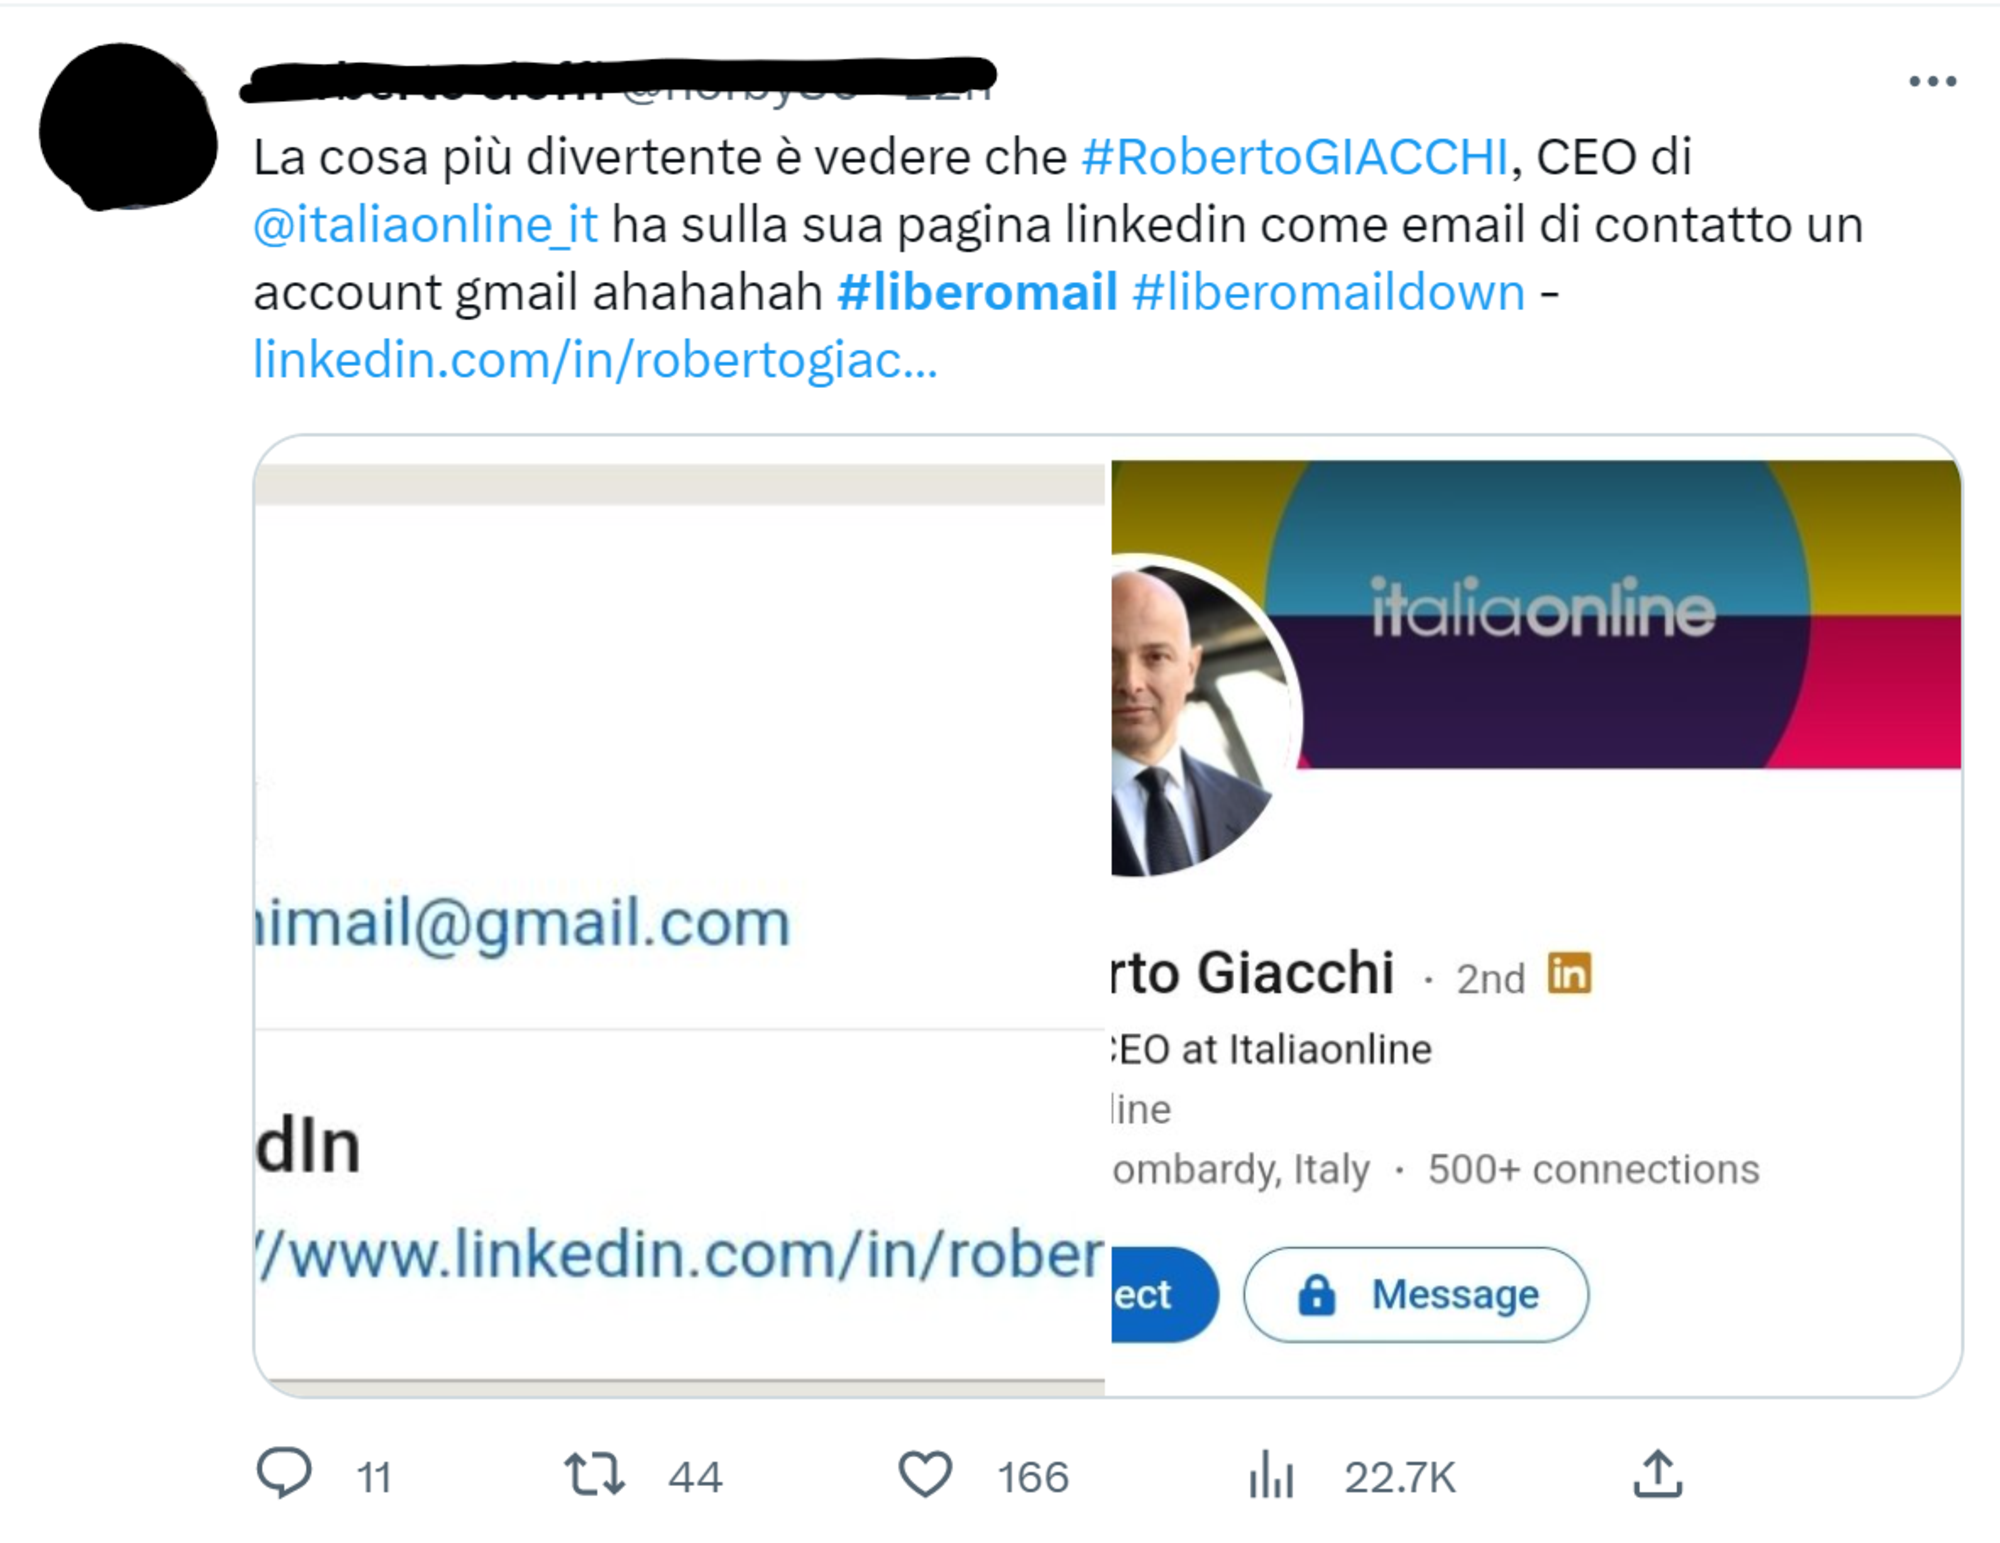 Un tweet sul profilo LinkedIn del CEO di Italiaonline